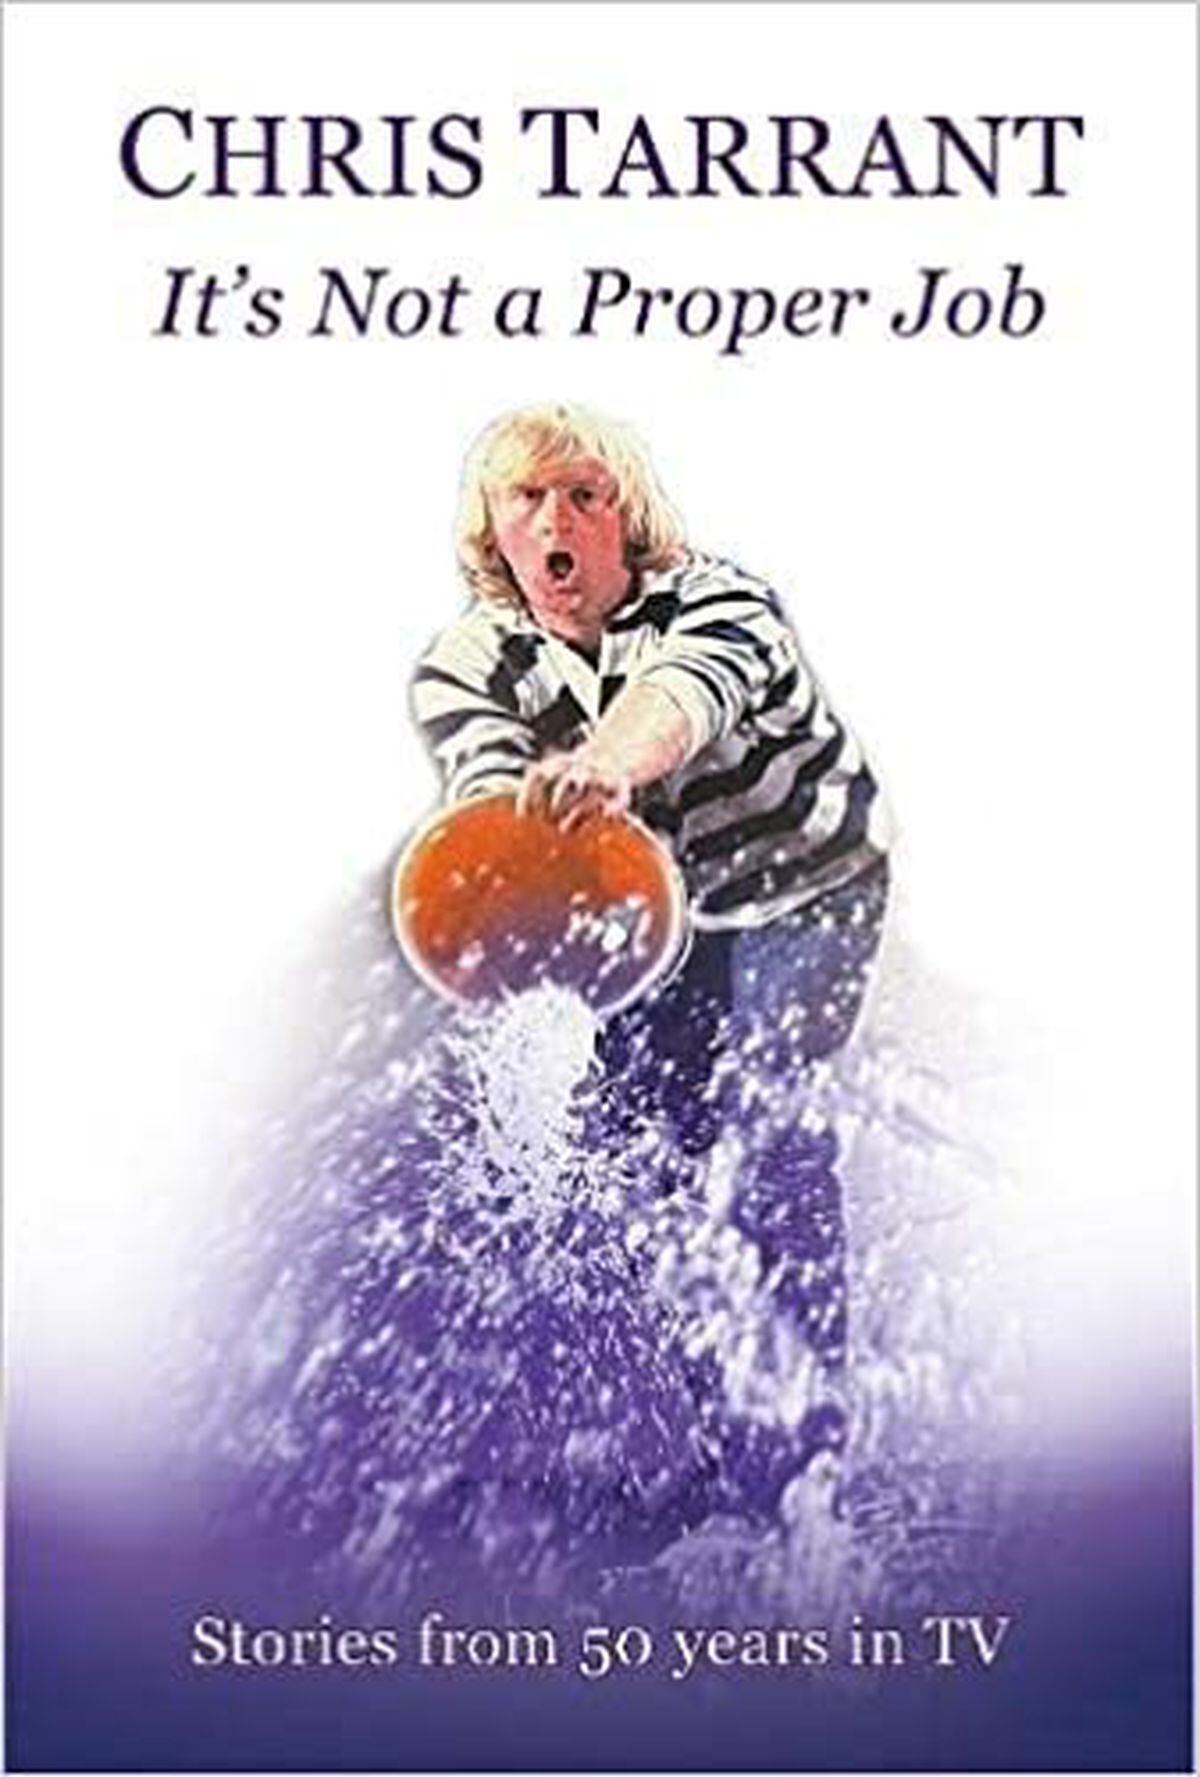 Chris Tarrant's new book Not A Proper Job 